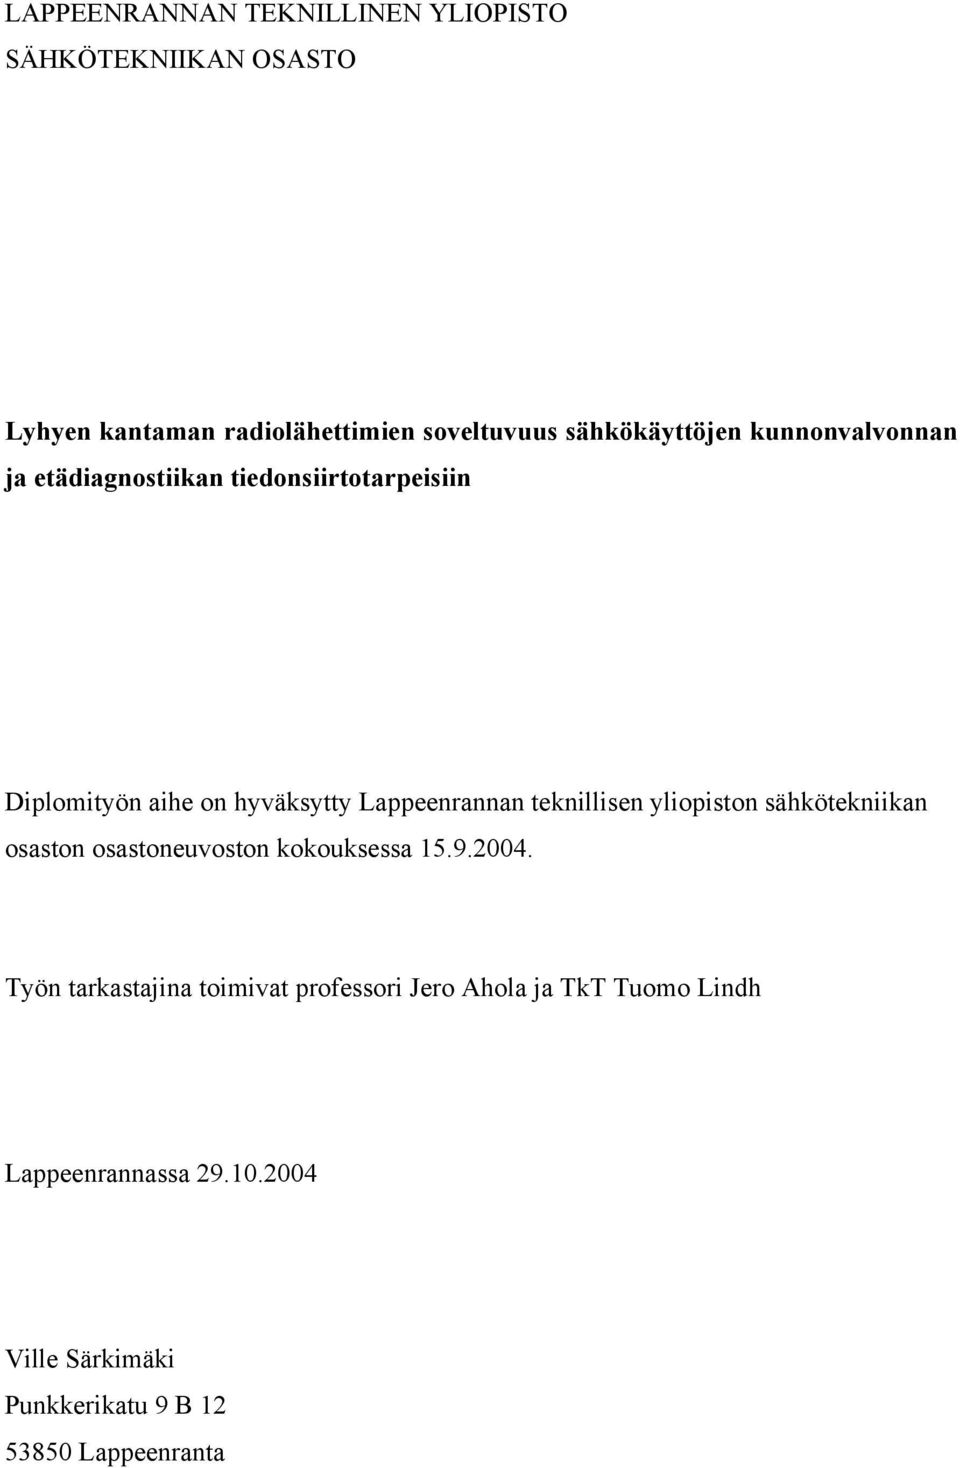 Lappeenrannan teknillisen yliopiston sähkötekniikan osaston osastoneuvoston kokouksessa 15.9.2004.